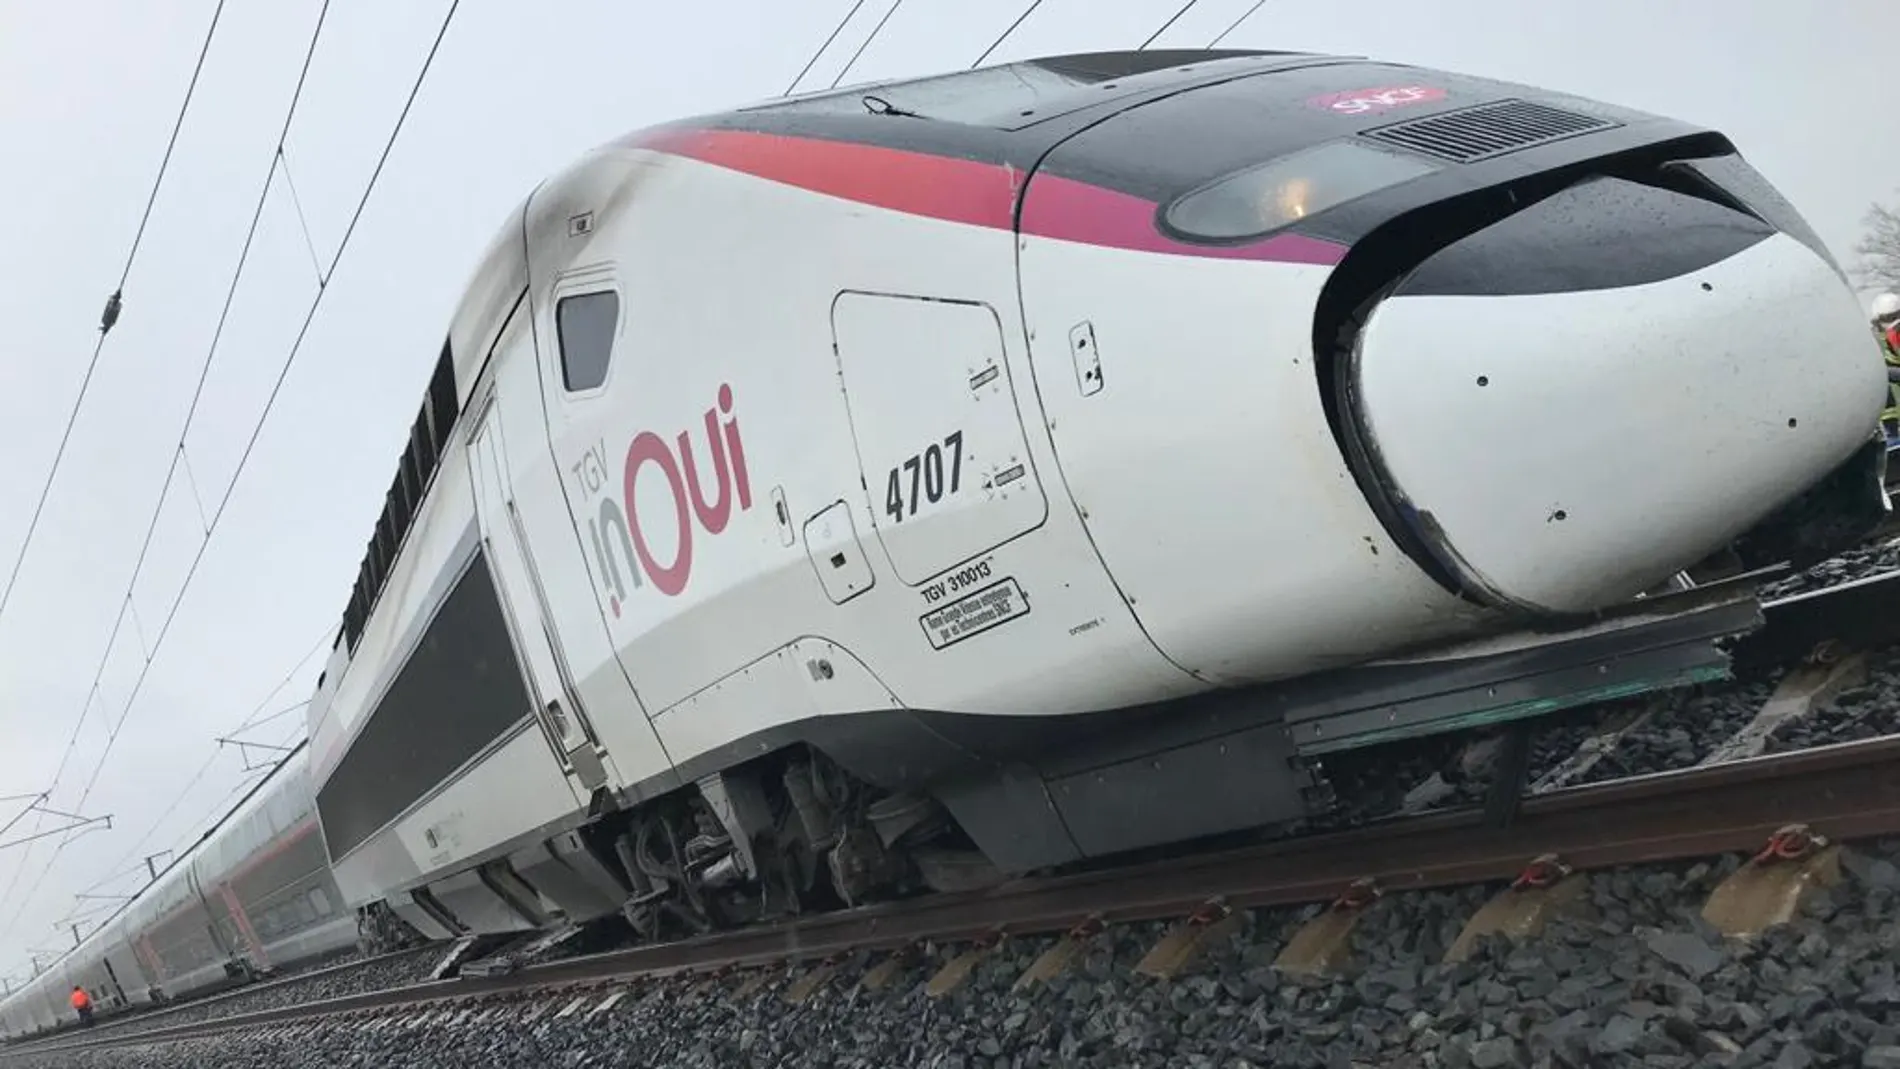 Una veintena de heridos tras descarrilar un tren de alta velocidad en Francia